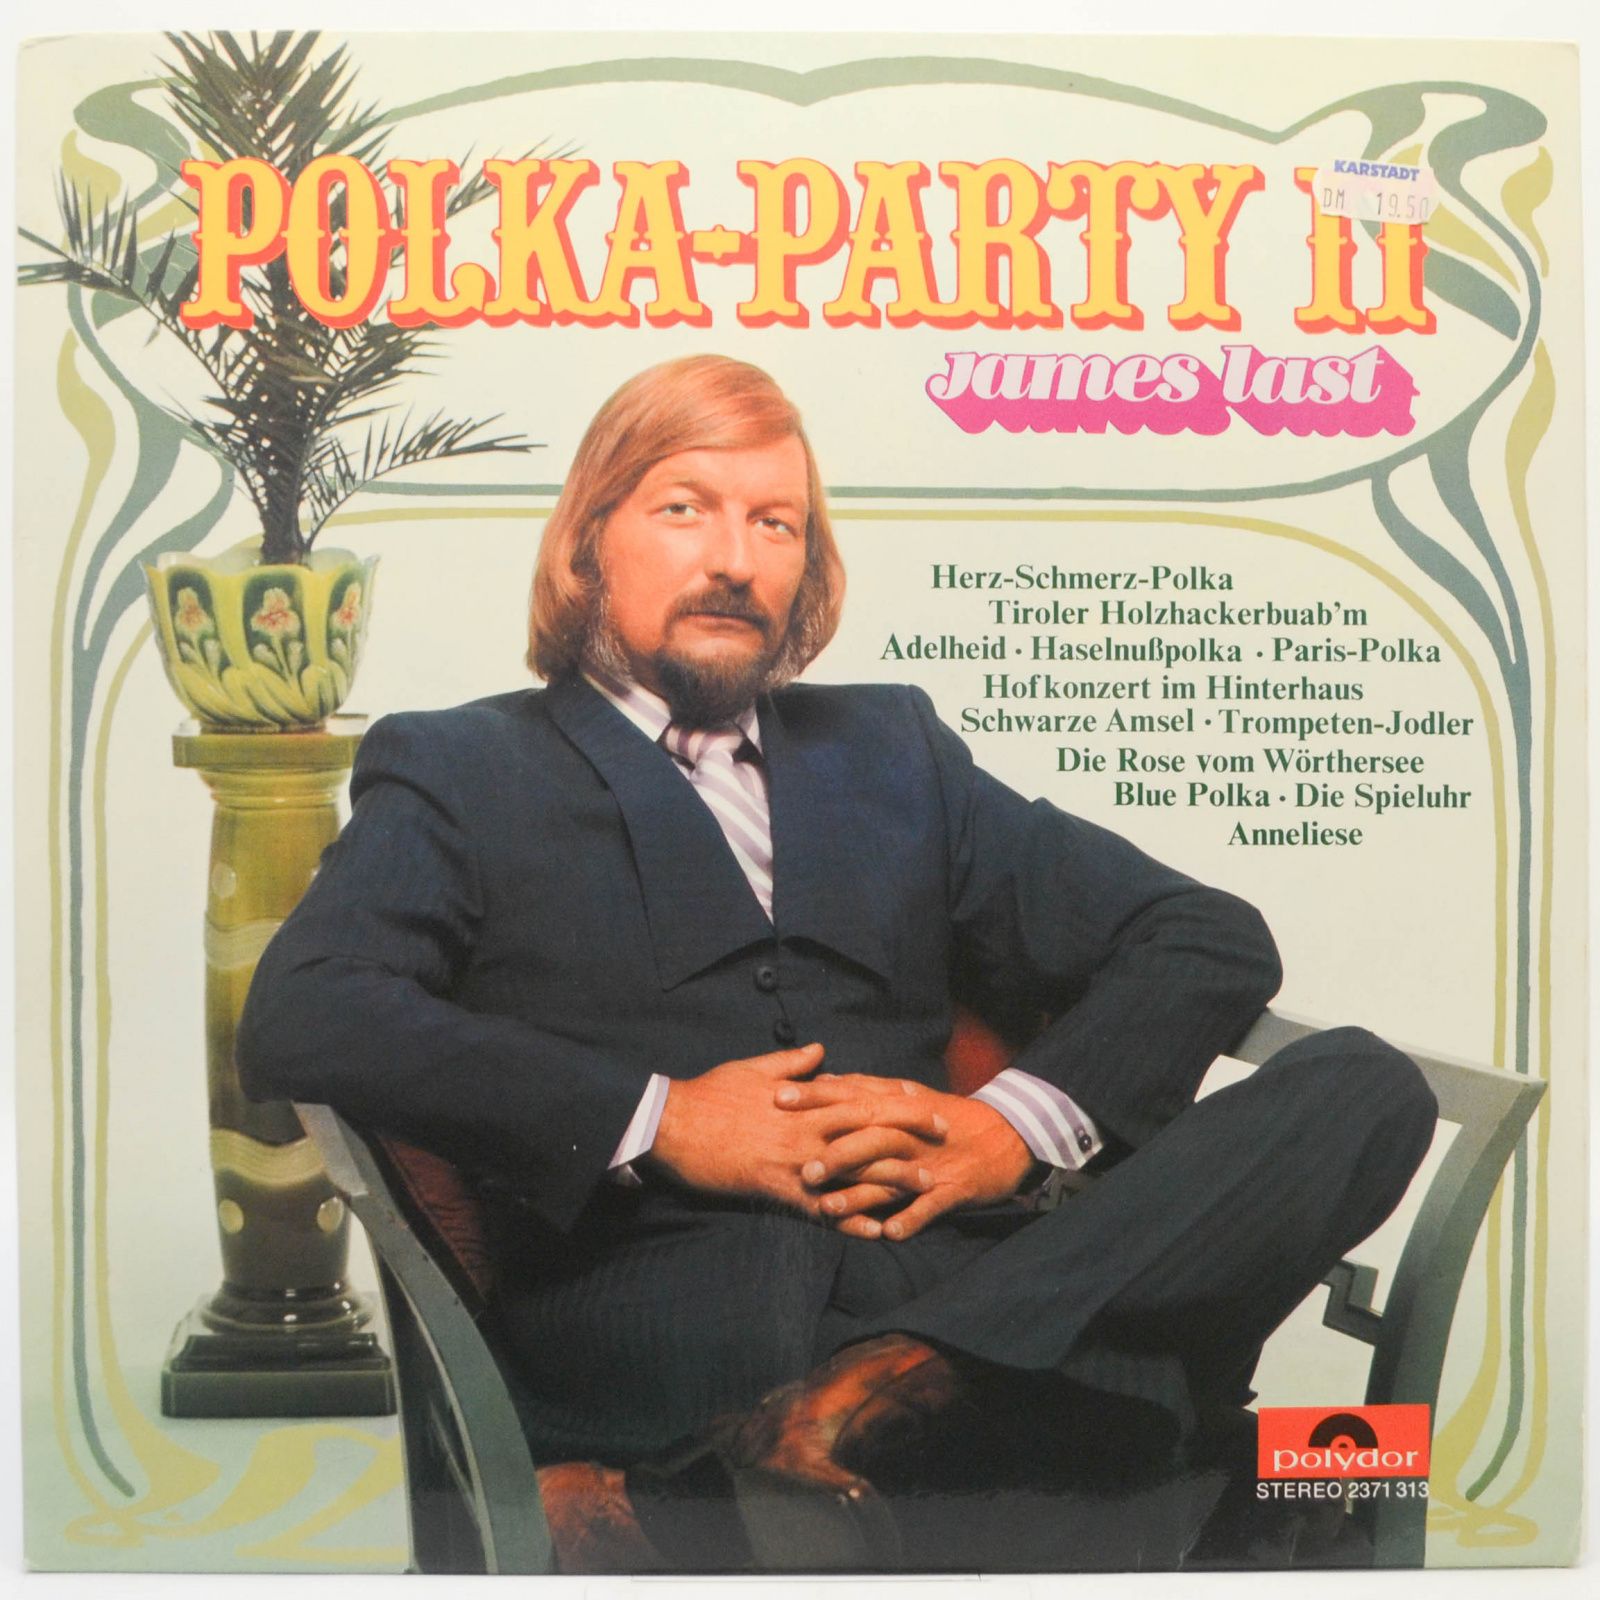 James Last — Polka-Party II, 1972